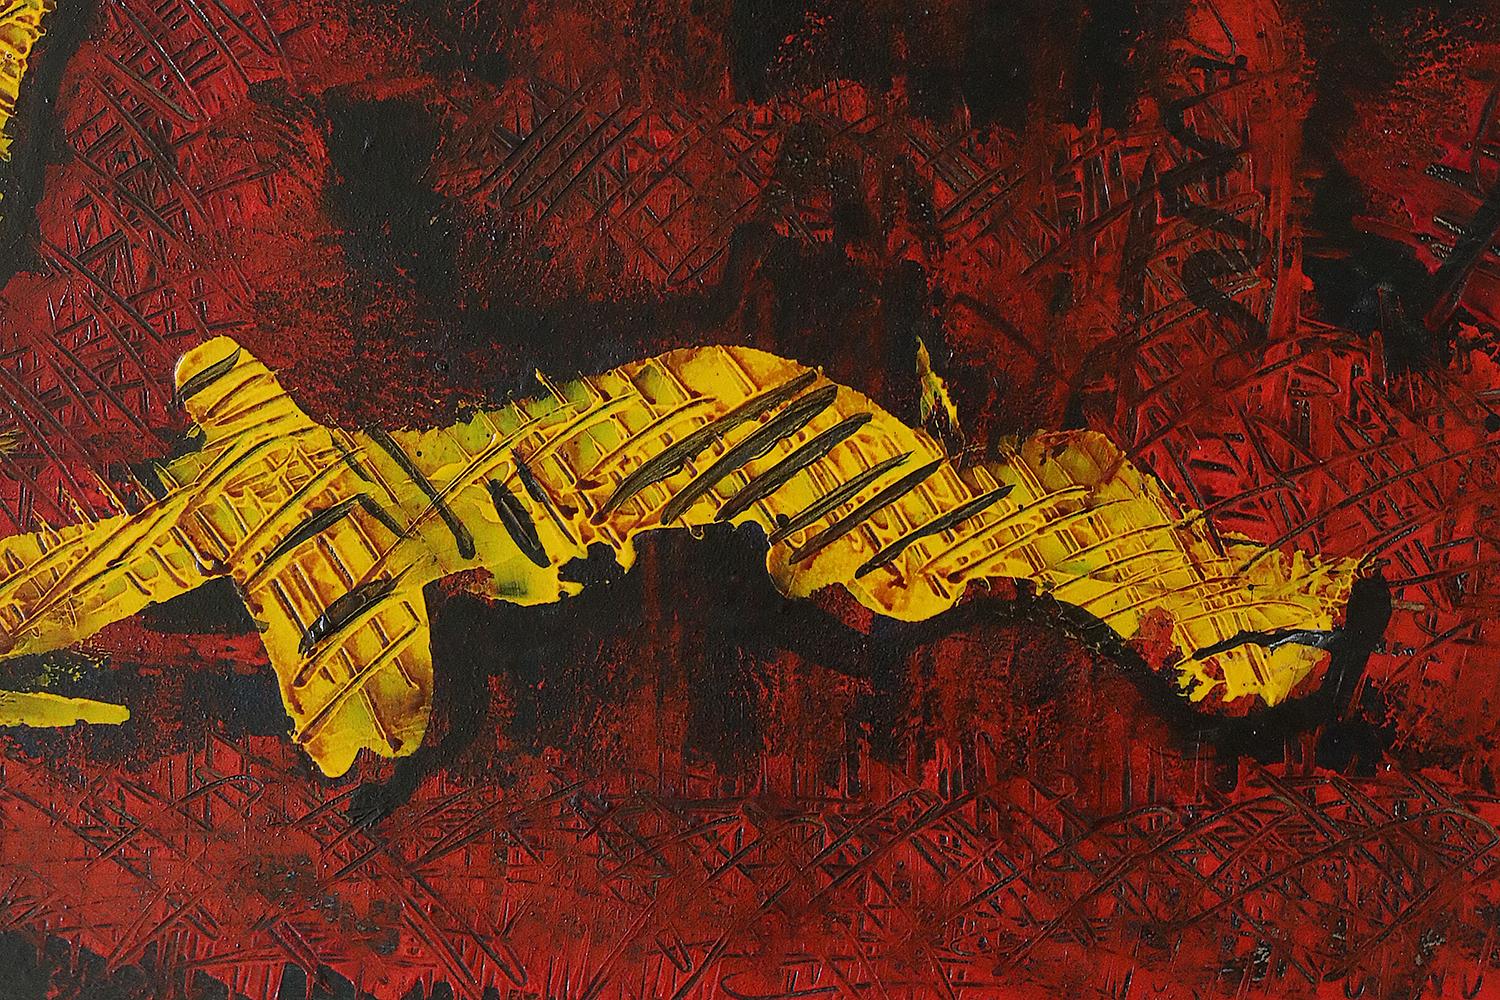 Roald Ditmer, Abstrakte Komposition, 1999
Ölgemälde auf Leinwand
Vom Künstler signiertes Werk
Arbeitsmaße 89/68
Gerahmte Arbeit

Roald Ditmer wurde 1959 geboren. Er ist ein dänischer Künstler, der sich auf abstrakte Ölkompositionen spezialisiert